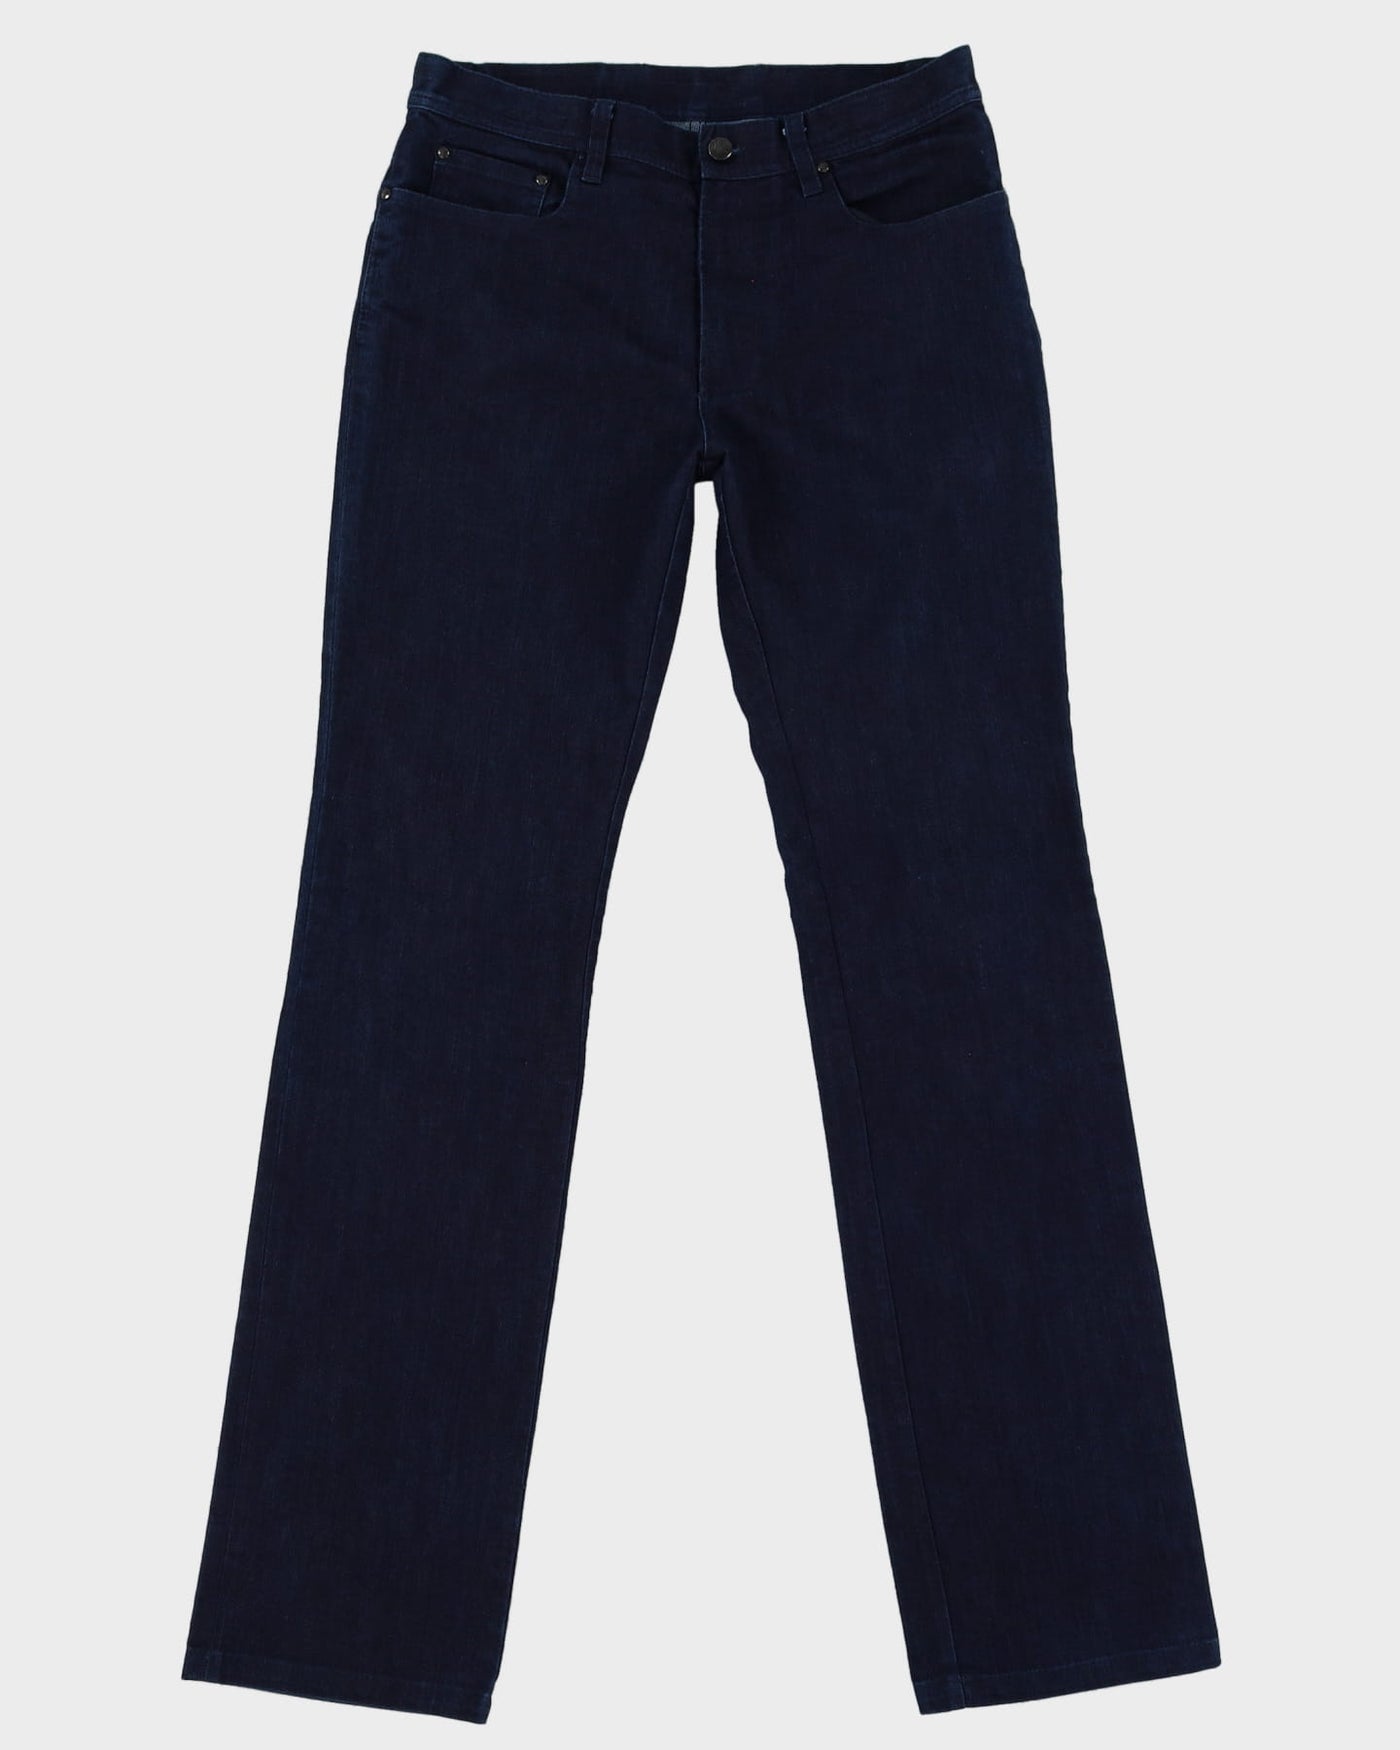 Versace Collection Navy Dark Wash Jeans - W32 L35